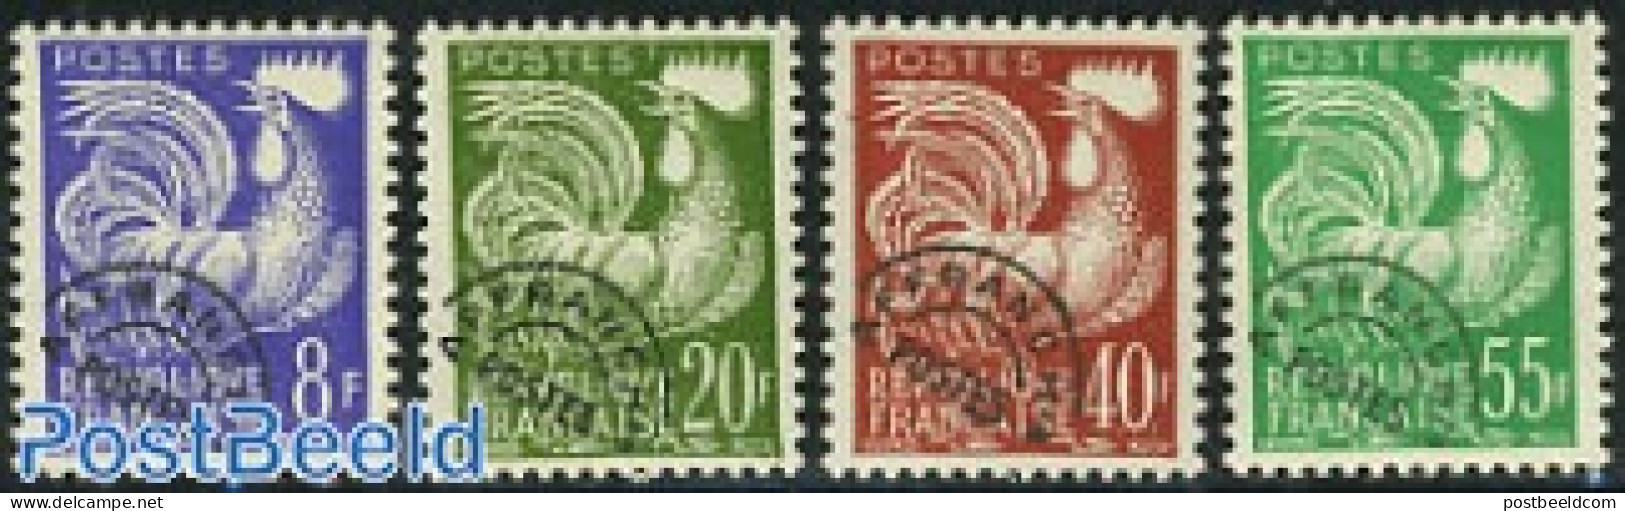 France 1959 Precancels 4v, Mint NH, Nature - Poultry - Nuovi